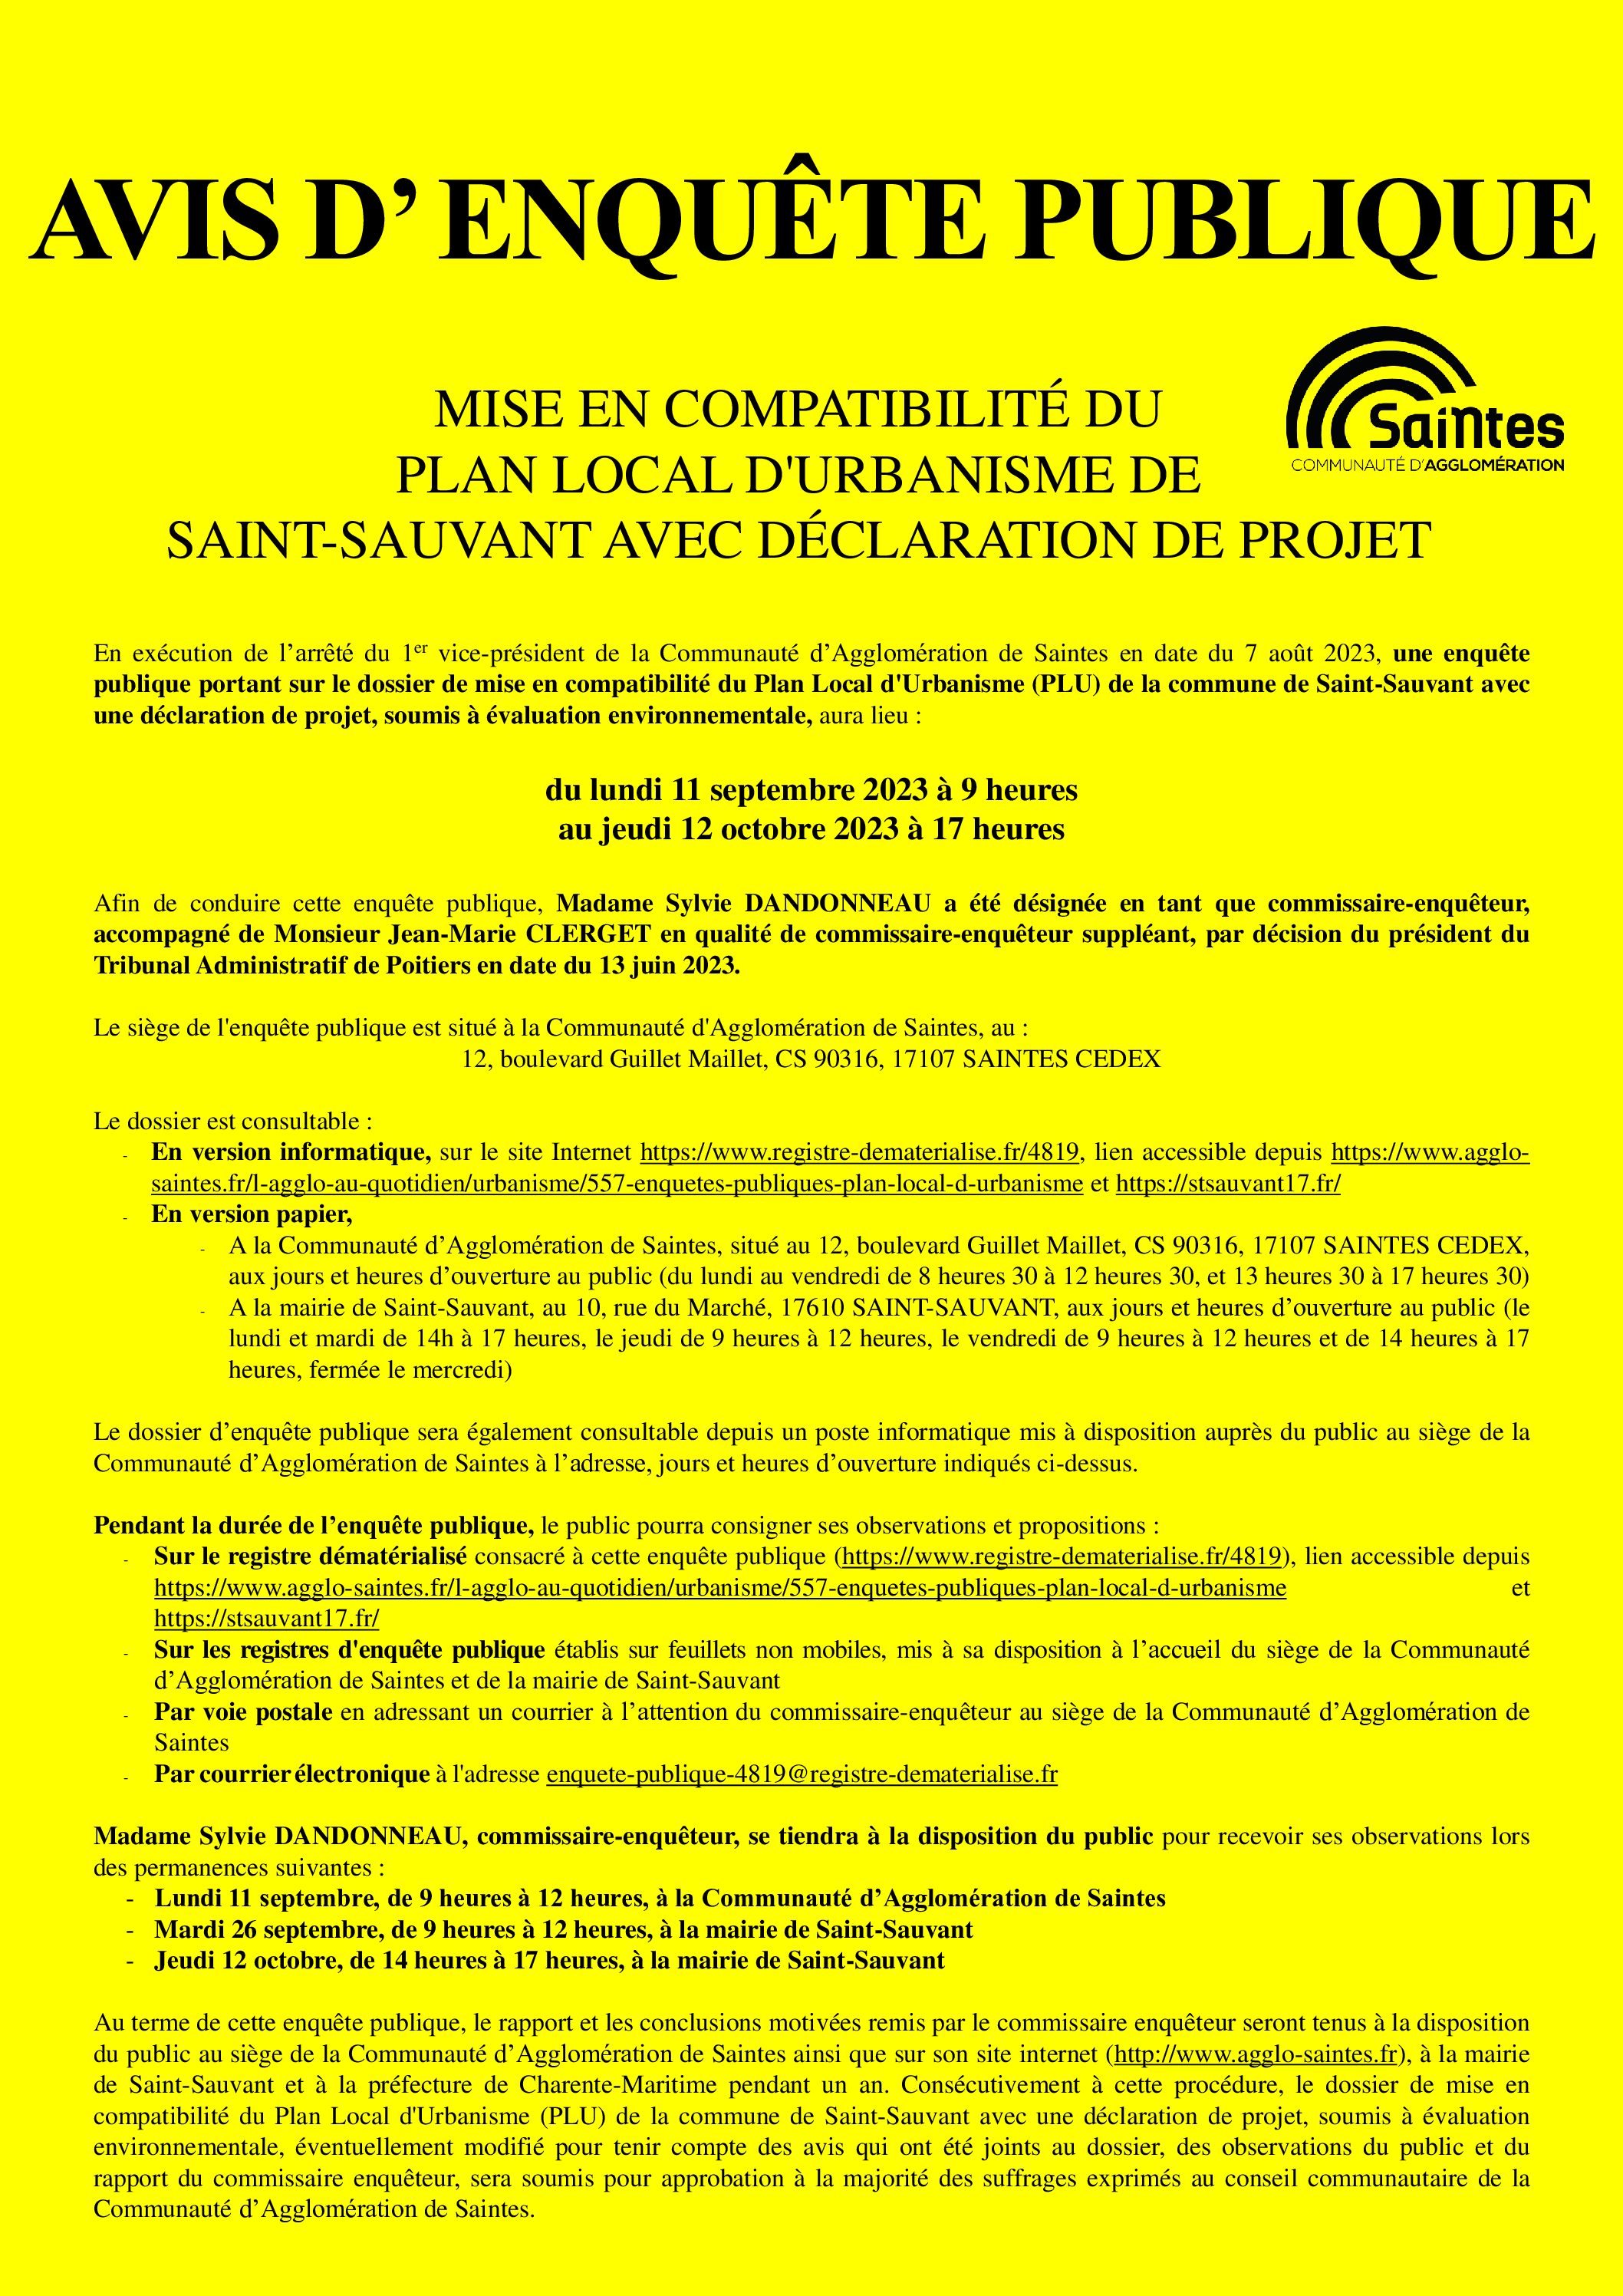 AVIS D’ENQUETE PUBLIQUE – Mise en compatibilité du Plan Local d’Urbanisme (PLU) de Saint-Sauvant